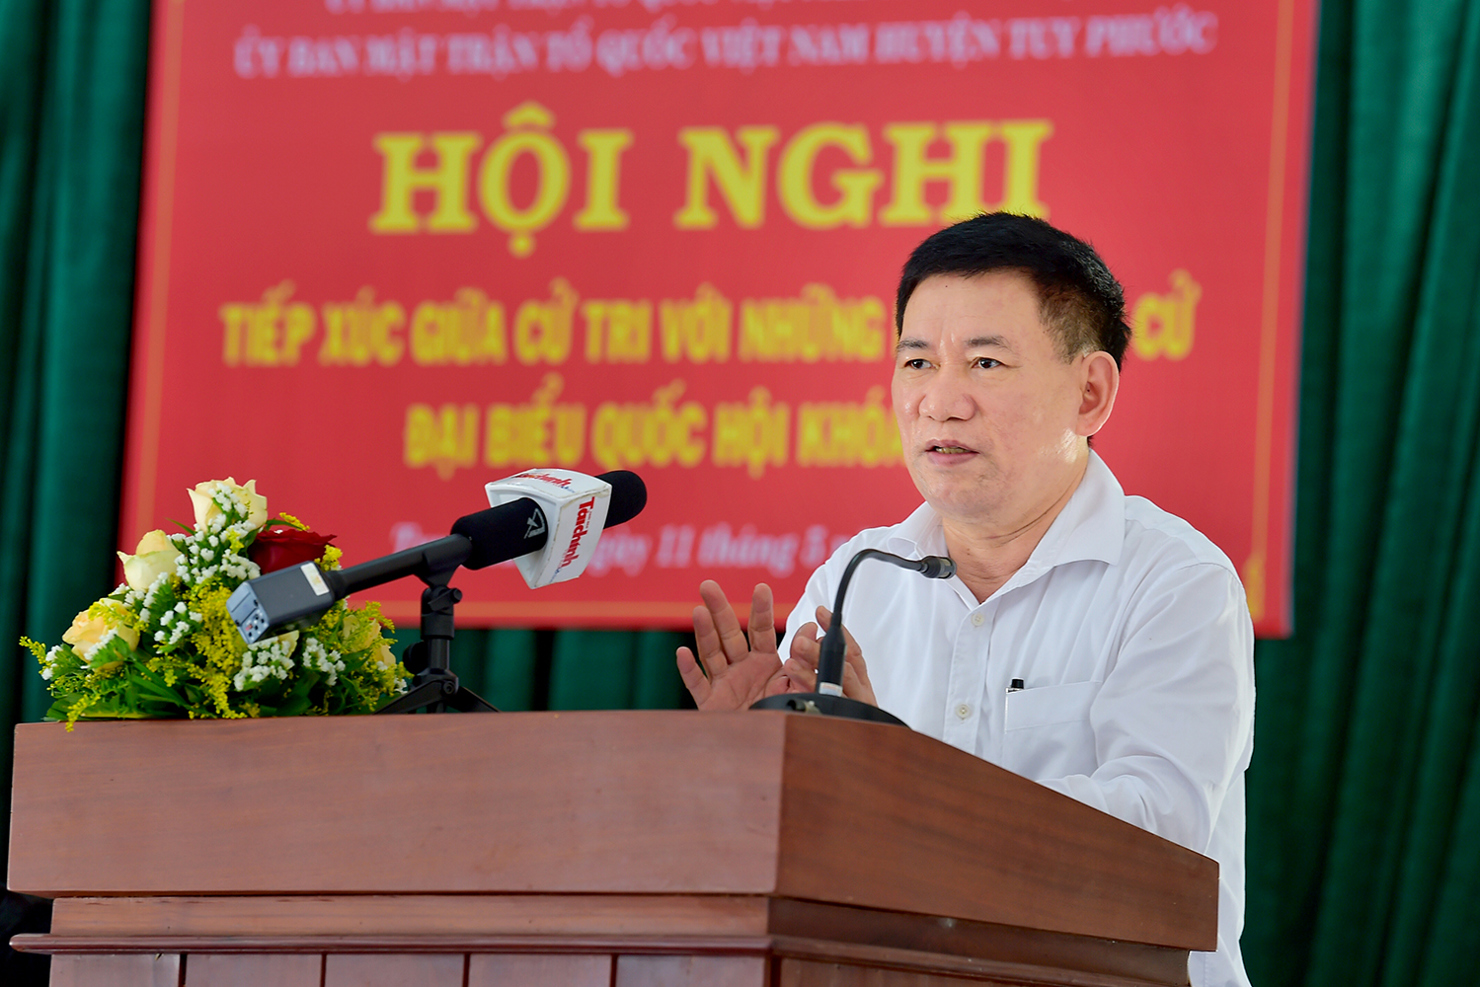 Bộ trưởng Bộ Tài chính Hồ Đức Phớc trình bày chương trình hành động của mình trước cử tri.